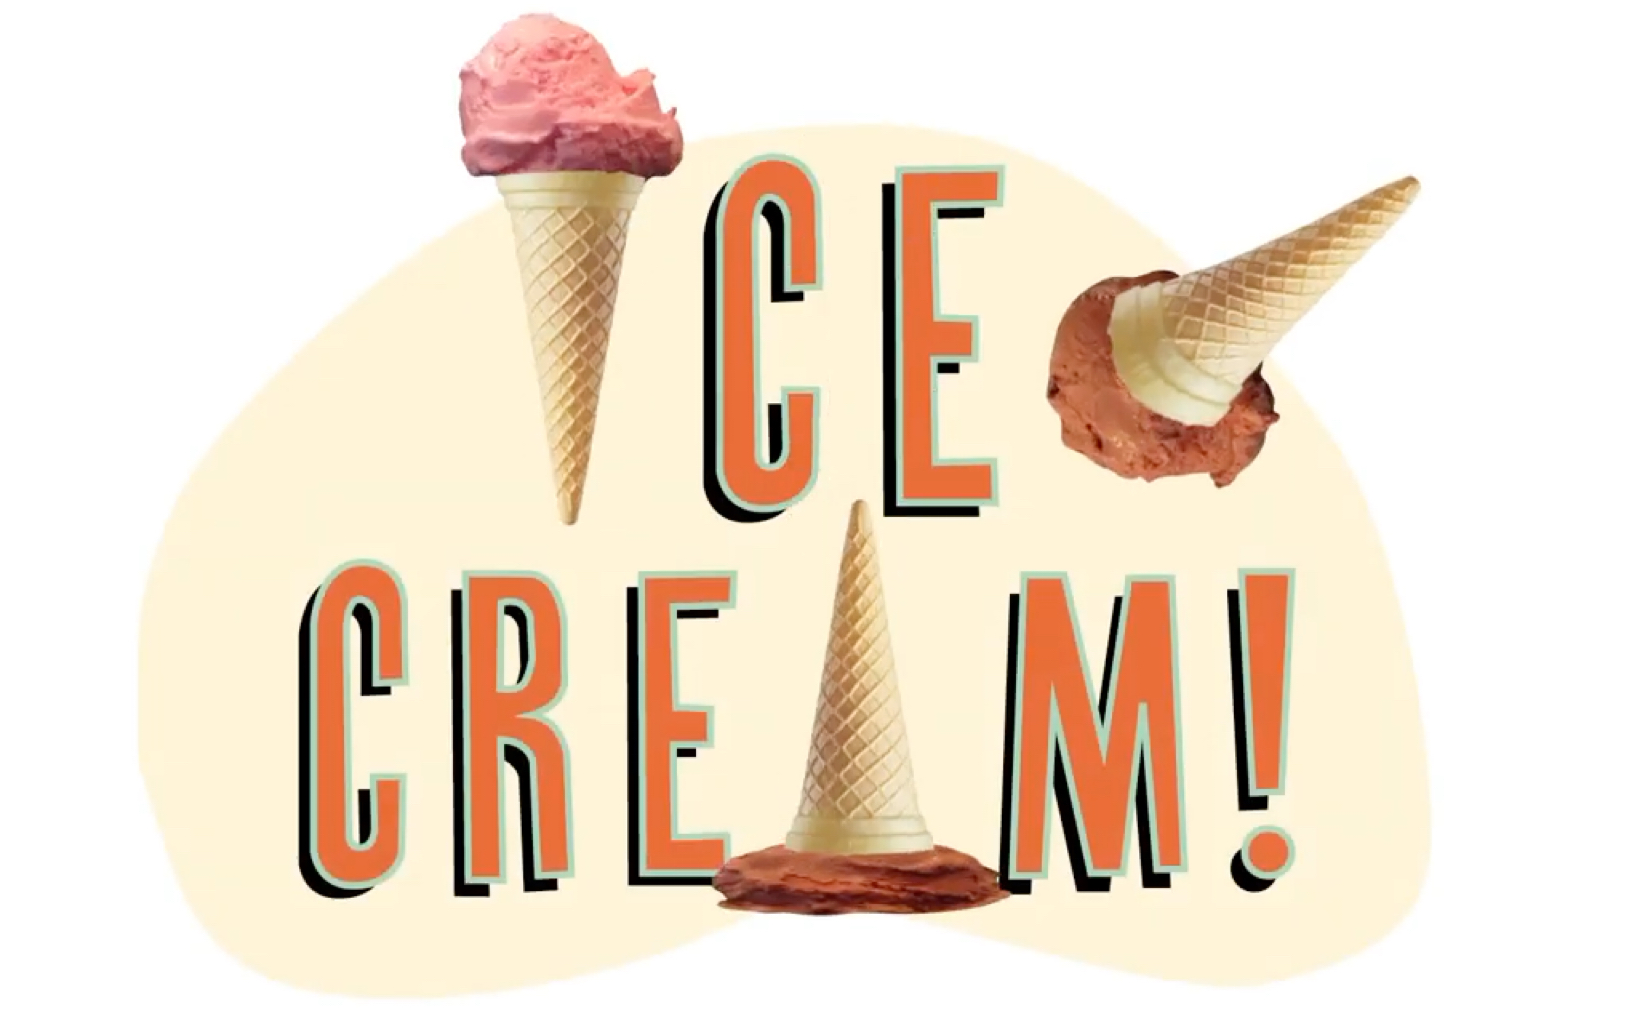 eat icecream图片